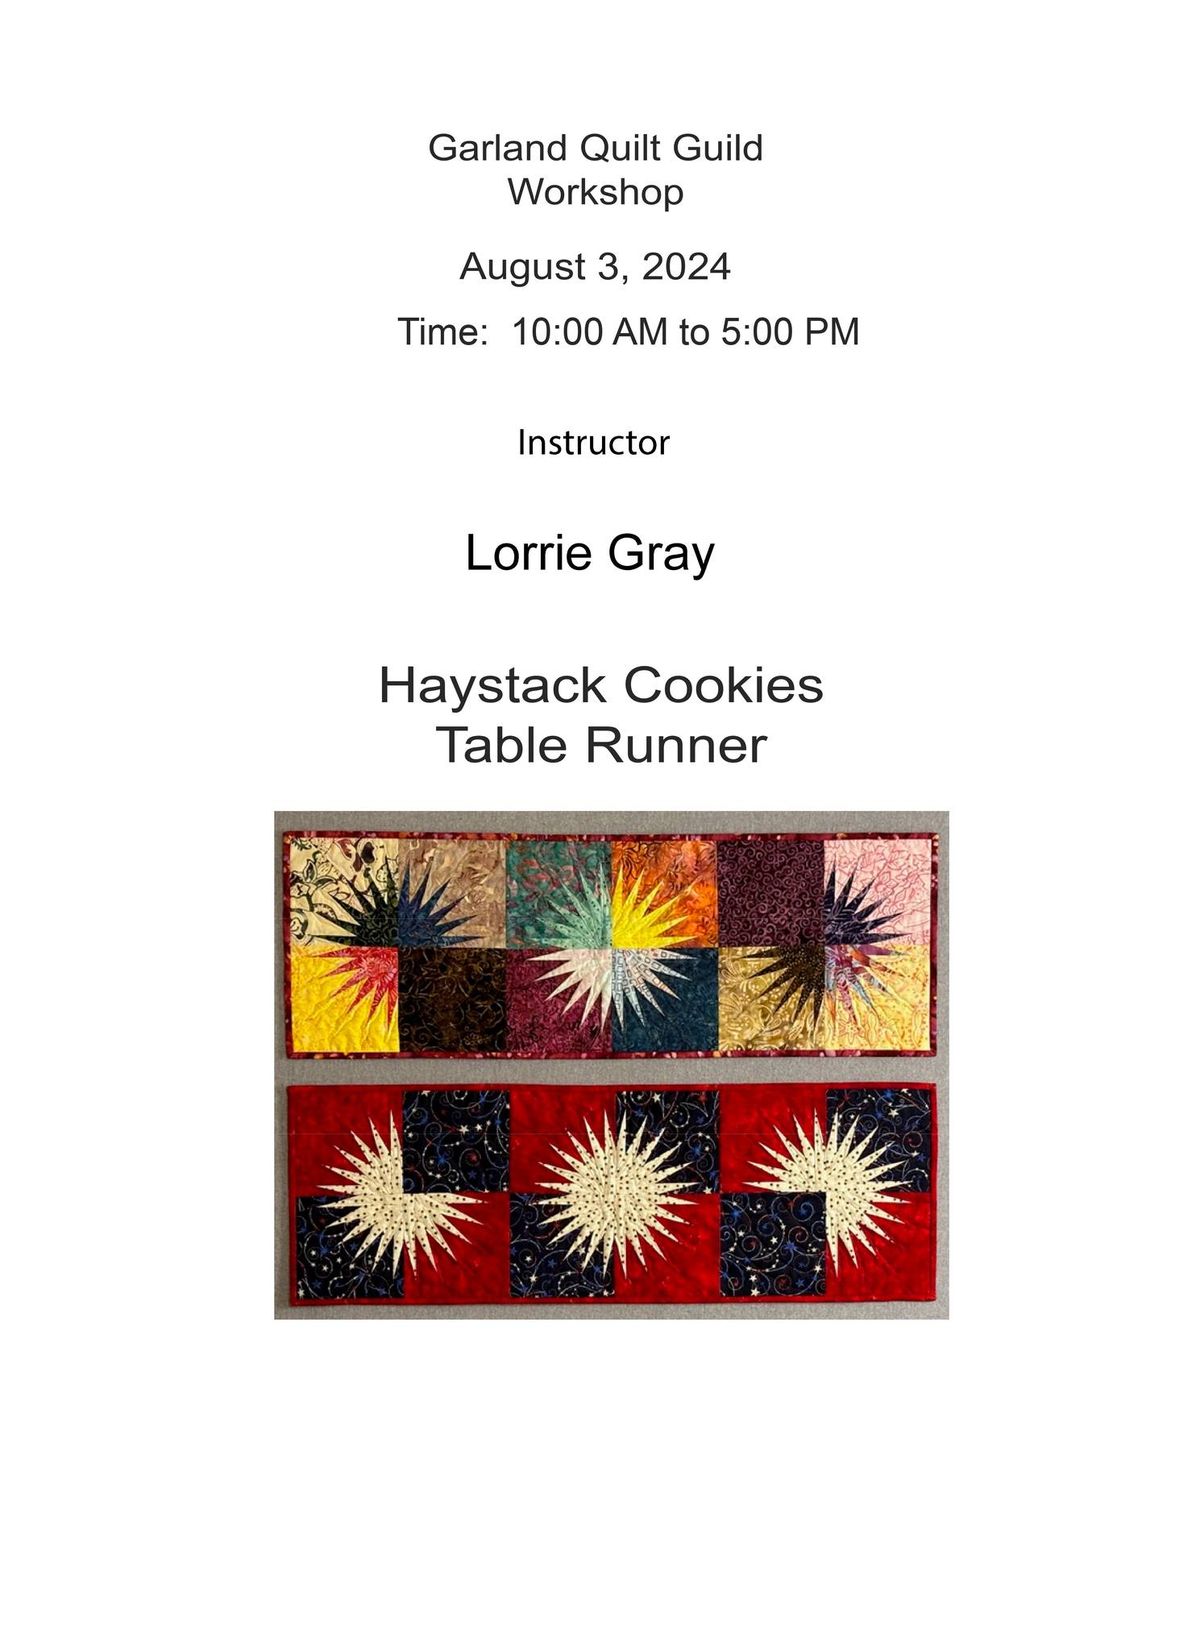 Workshop: Haystack Cookies Table Runner with Lorrie Gray